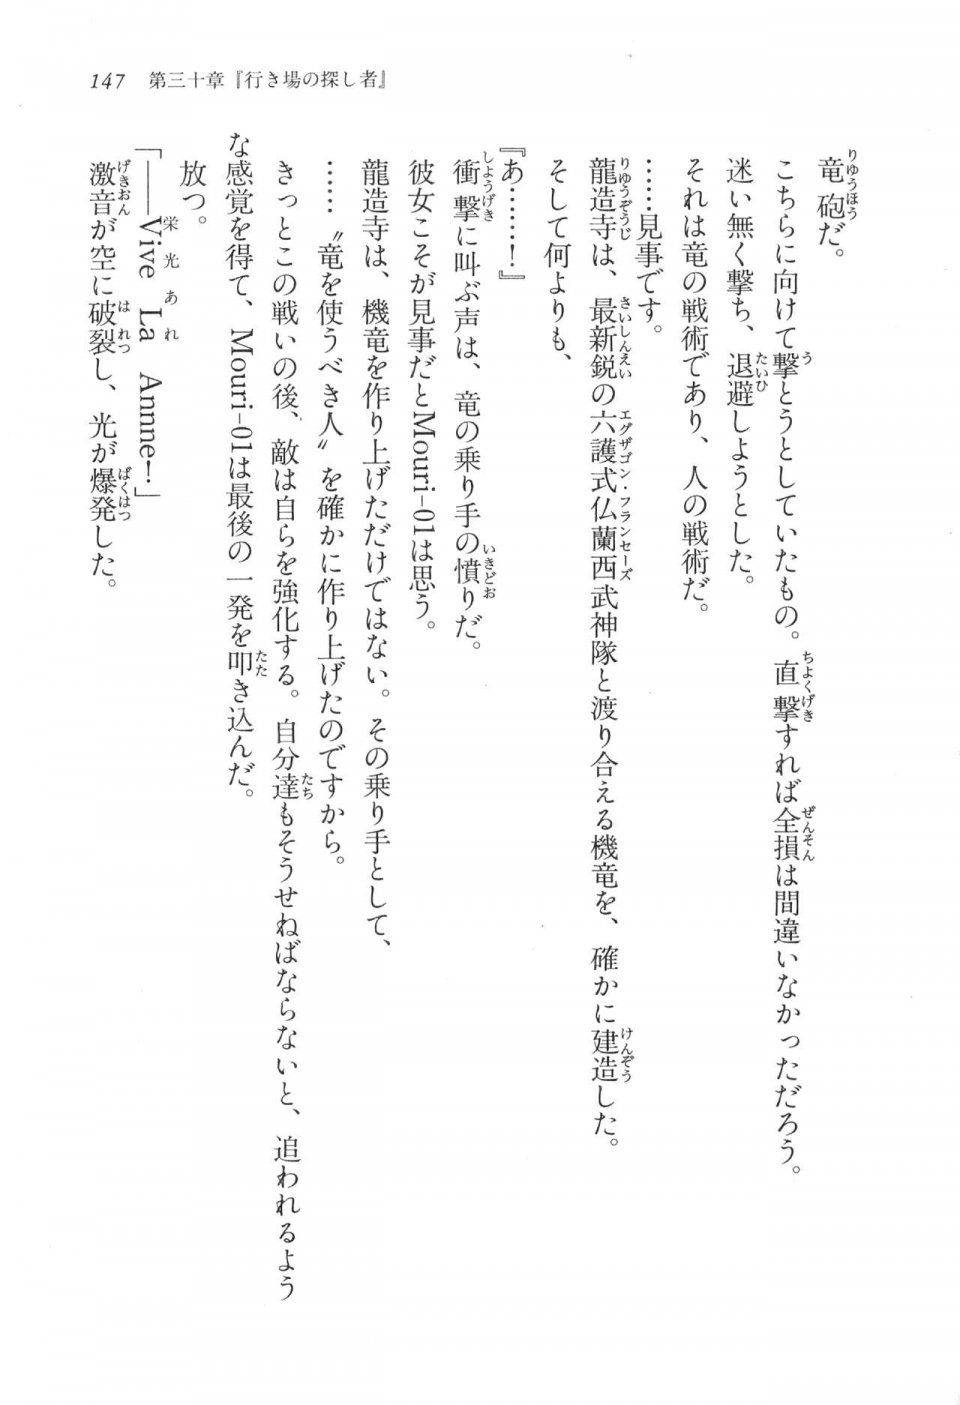 Kyoukai Senjou no Horizon LN Vol 17(7B) - Photo #147